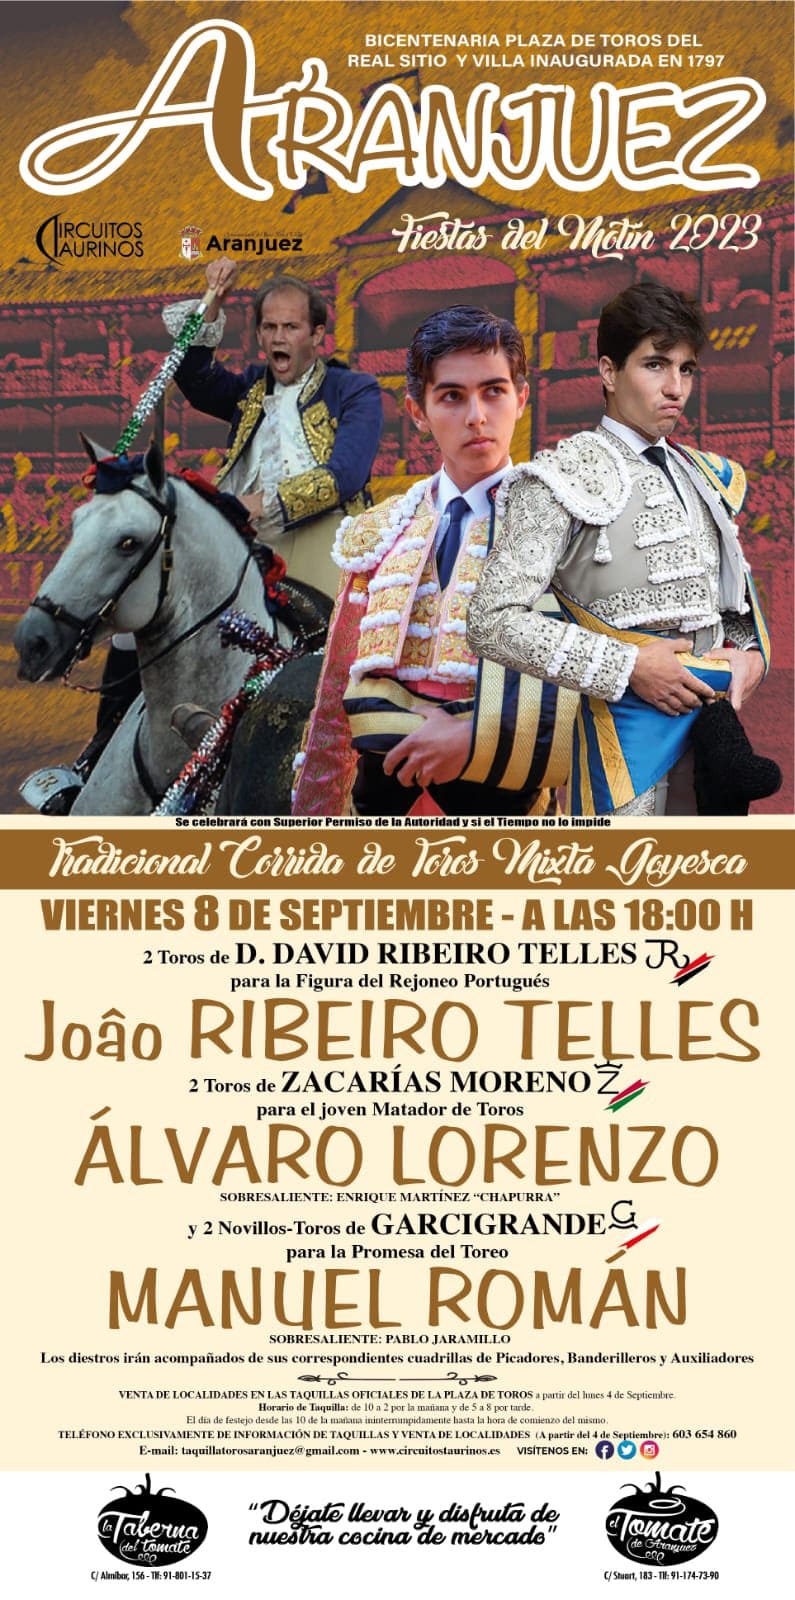 Aranjuez ya tiene cartel para las Fiestas del Motín